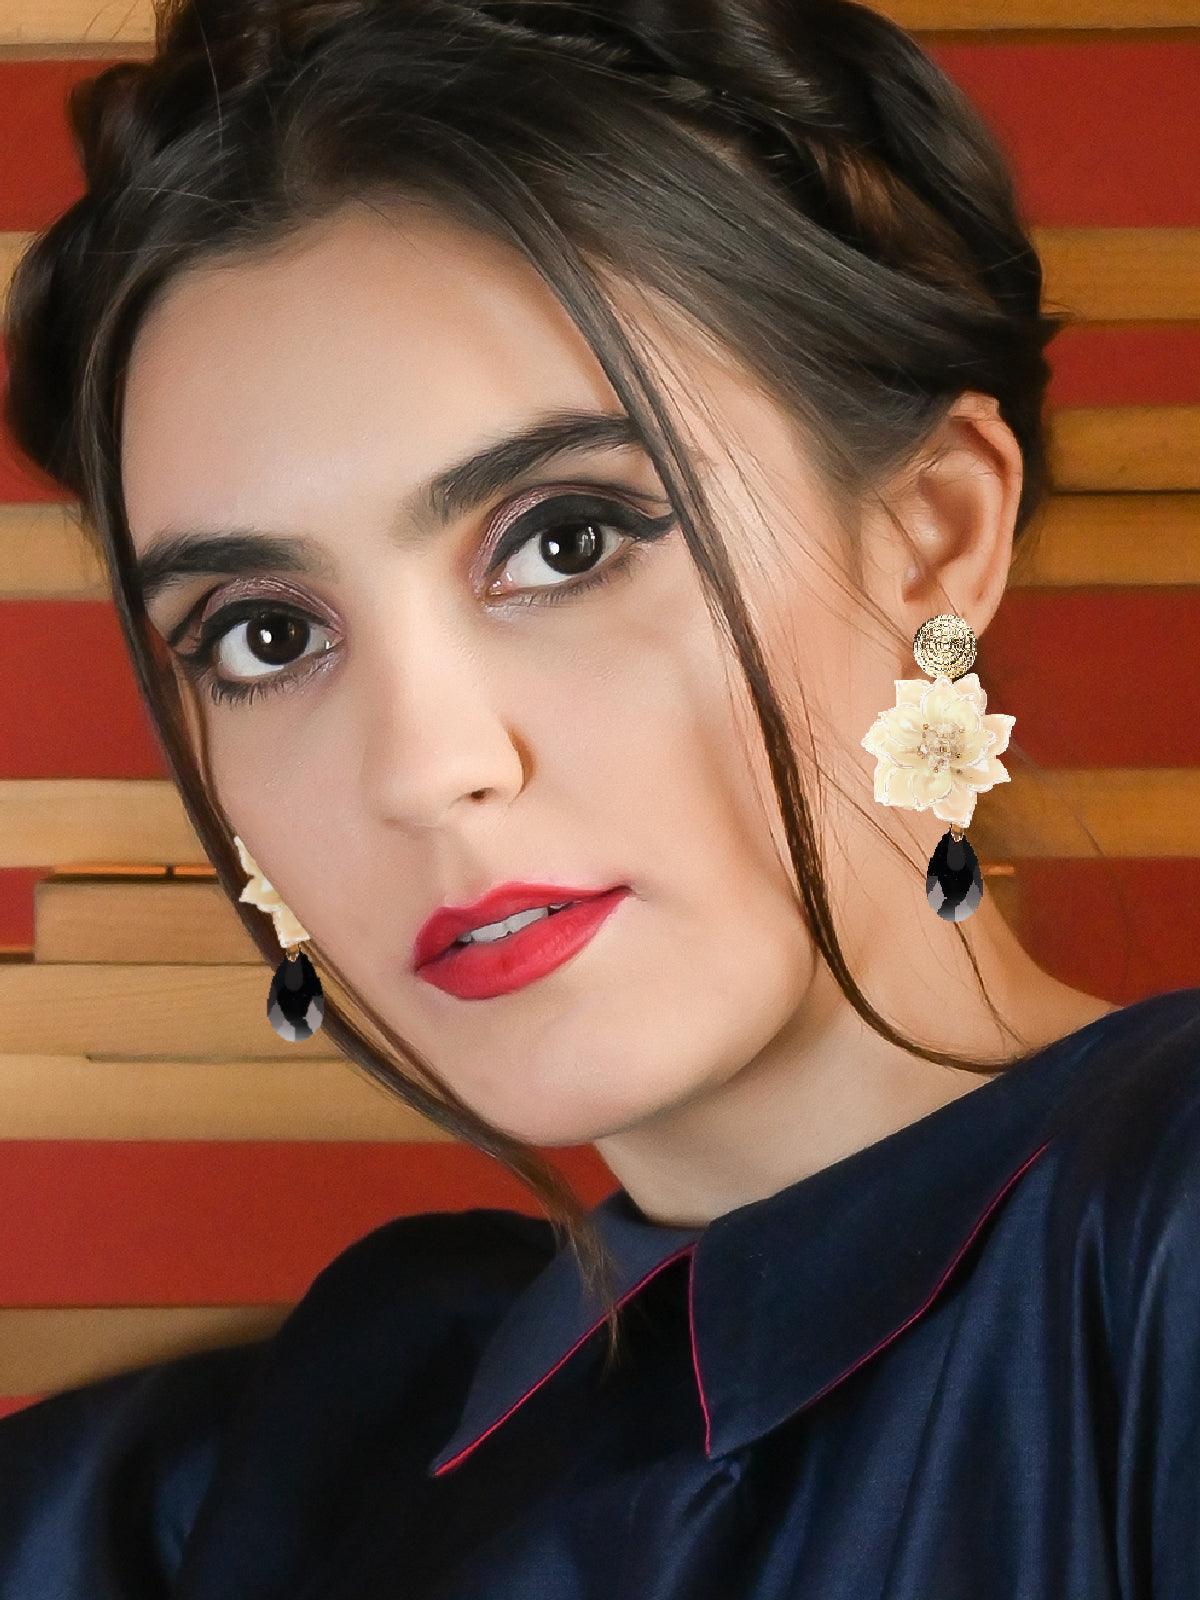 Women's Apricot Floral Drop Earrings - Odette